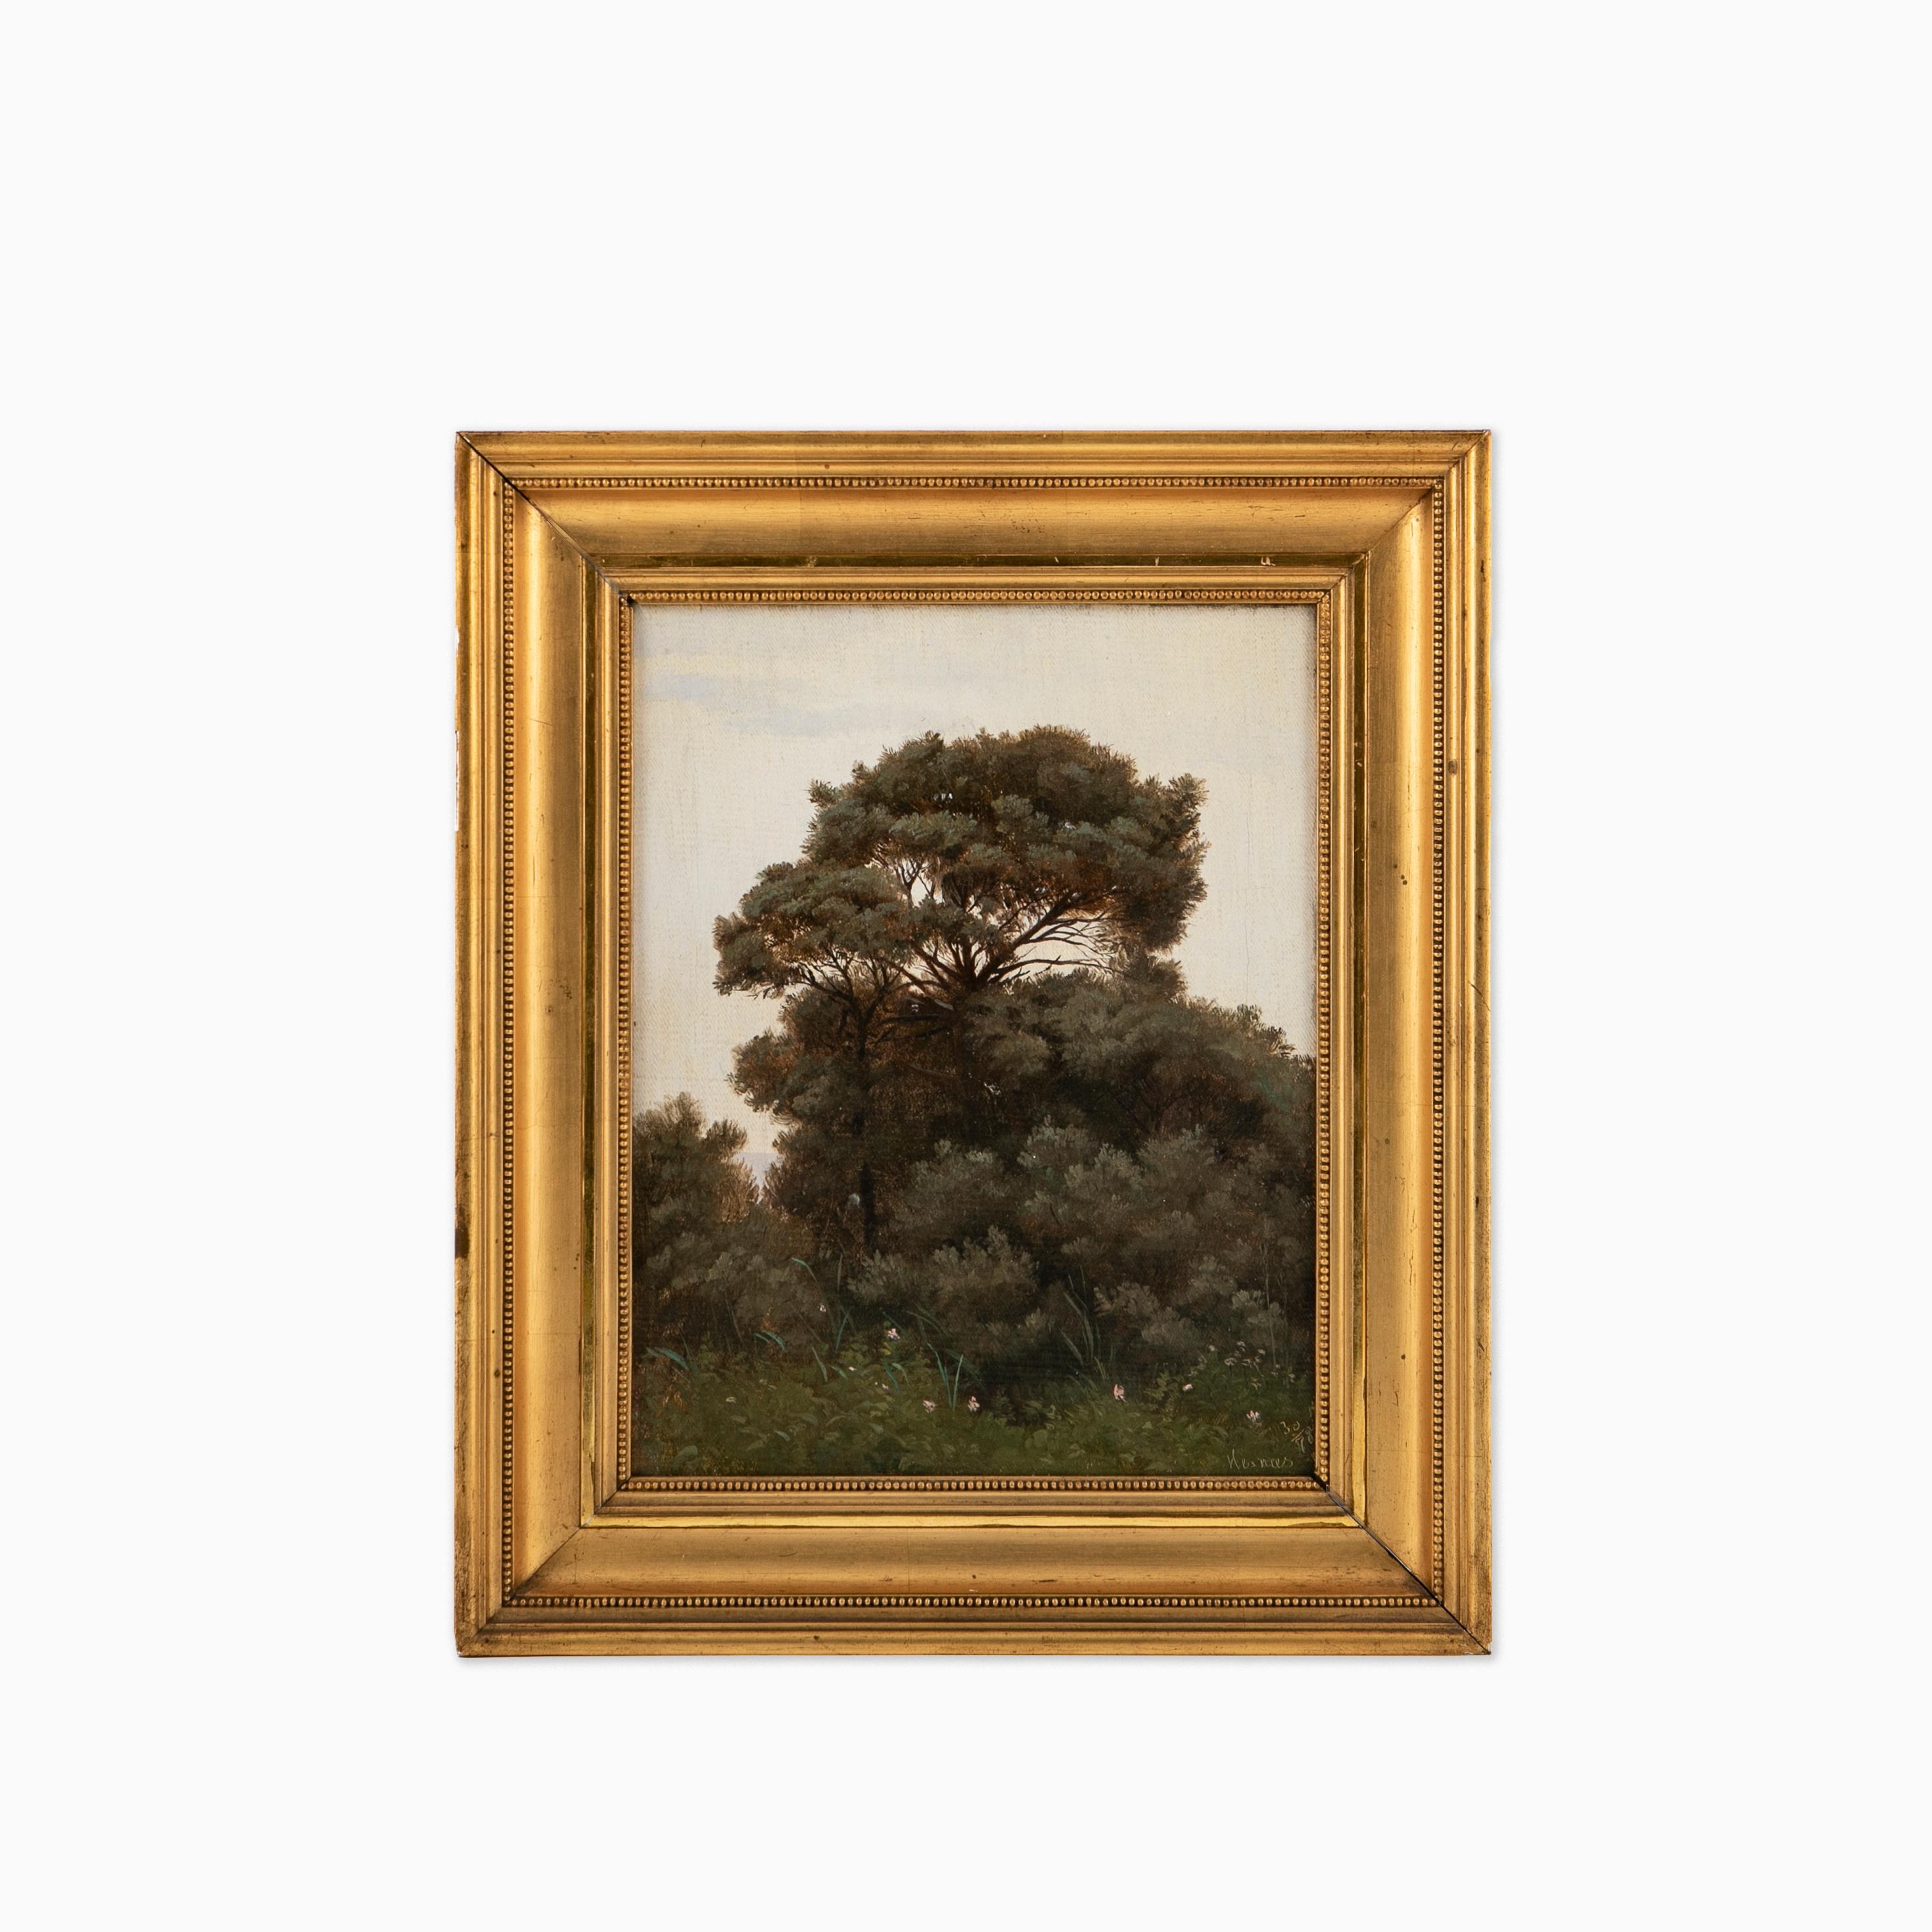 Fritz Thomsen (1819-1891), Danish painter.
Painting of forest scene near the shoreline of Hesnæs, on the Danish island of Falster, 1878.

Oil on canvas, framed.

Art measures : 25 x 19 cm.
Frame measures: 34 x 28,5 x 4,5 cm.